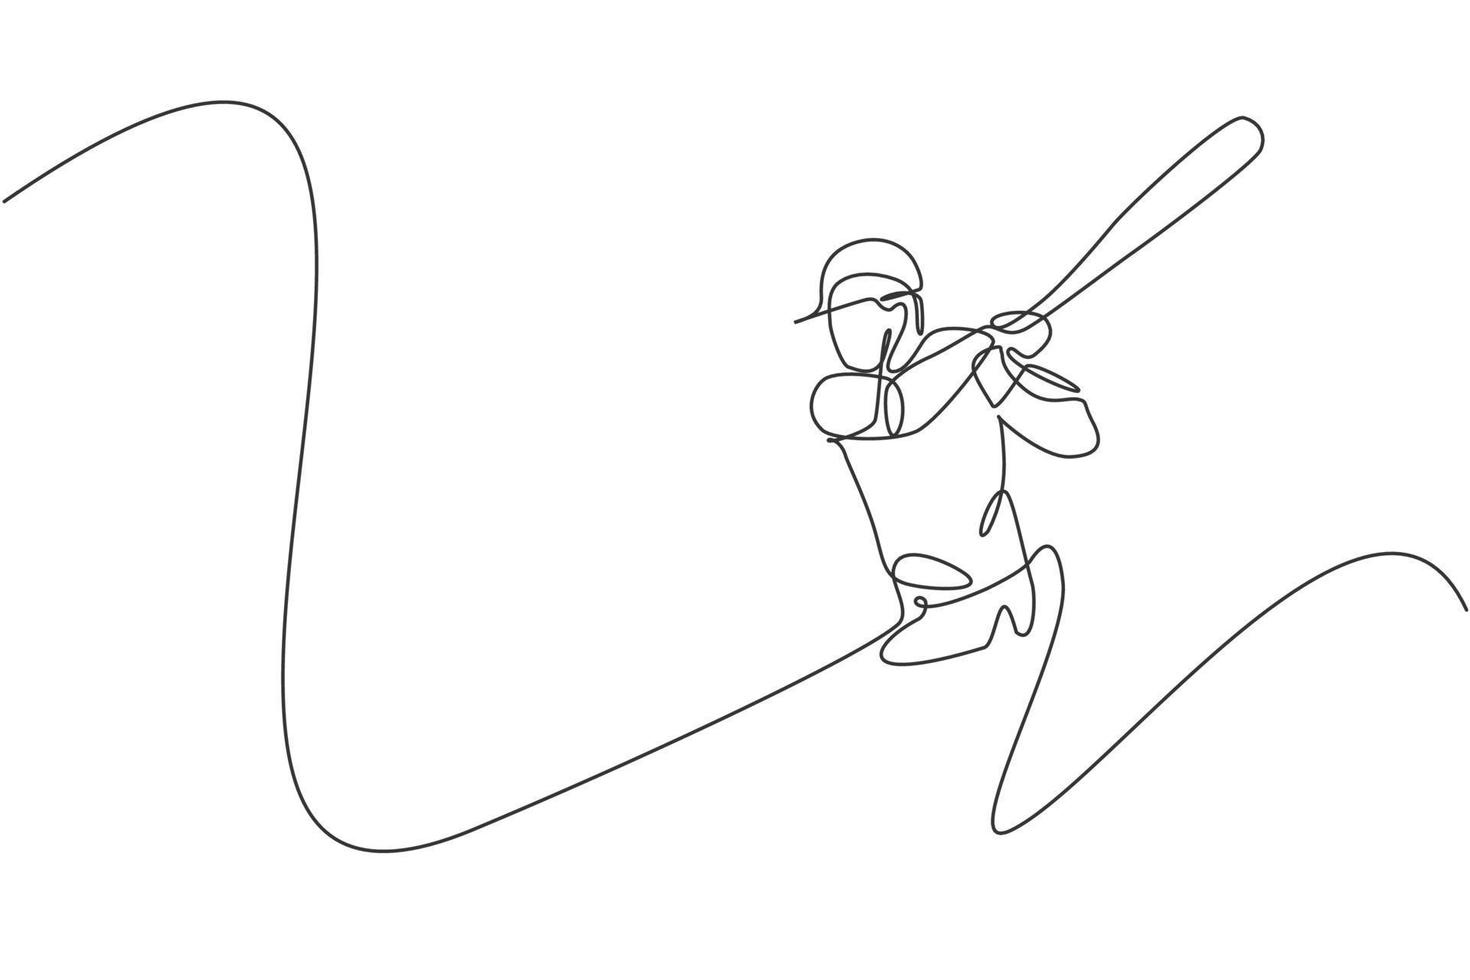 un dibujo de línea continua de un joven jugador de béisbol deportivo que hace ejercicio para golpear la pelota. concepto de deporte competitivo. ilustración gráfica de vector de diseño de dibujo de línea única dinámica para cartel de promoción